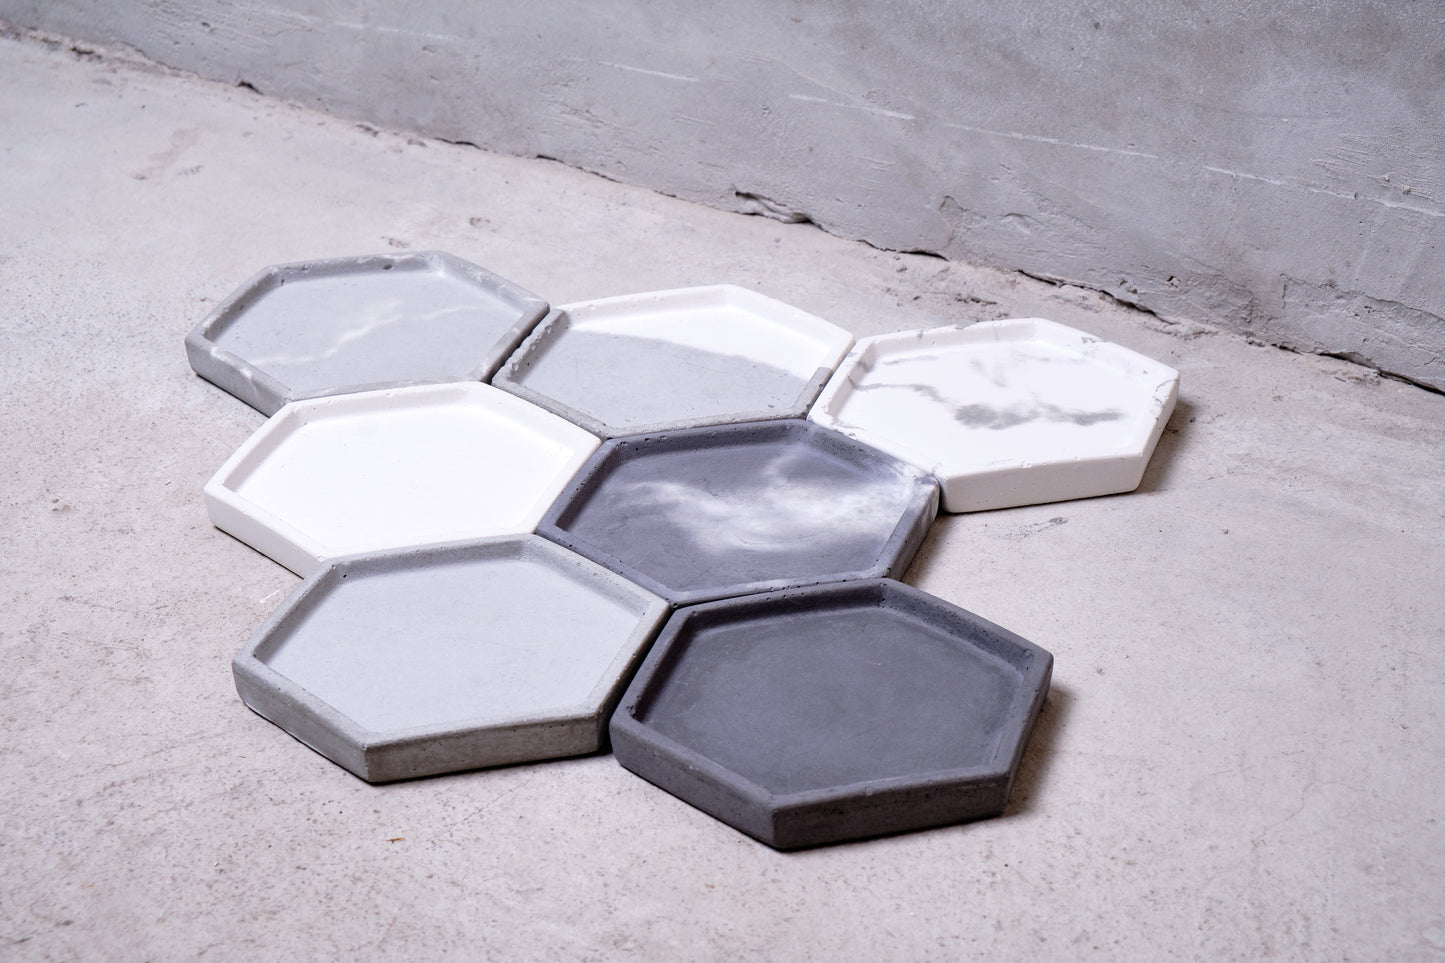 Concrete hexagon tray / accessory holder (small) - "couple"